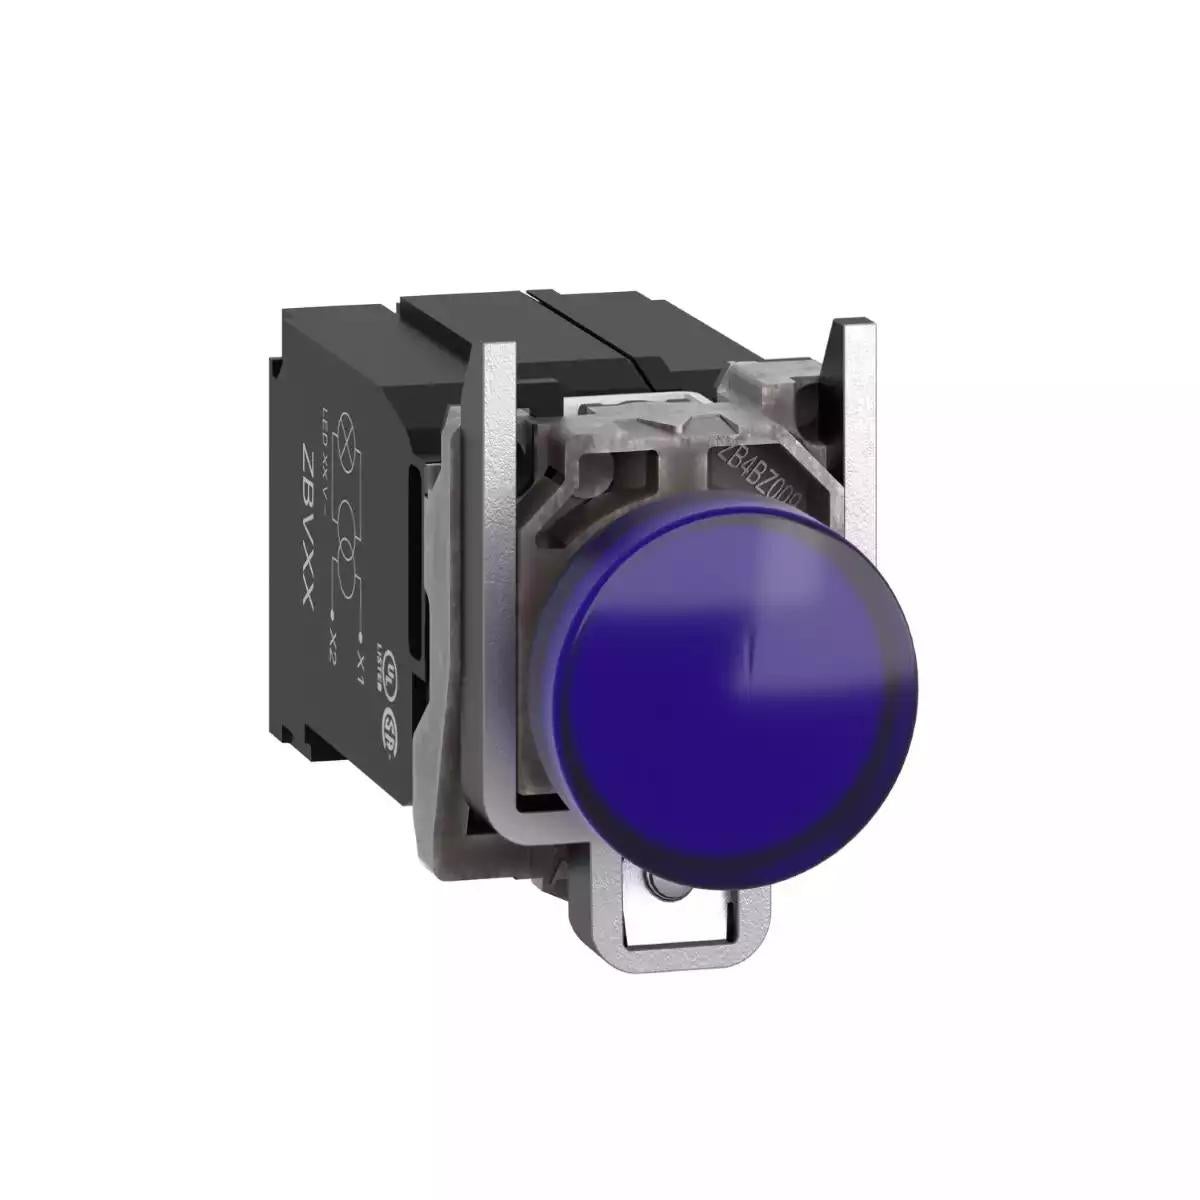 Pilot light, Harmony XB4, metal, protected LED light, blue, 22mm, with plain lens, universal LED, 400V